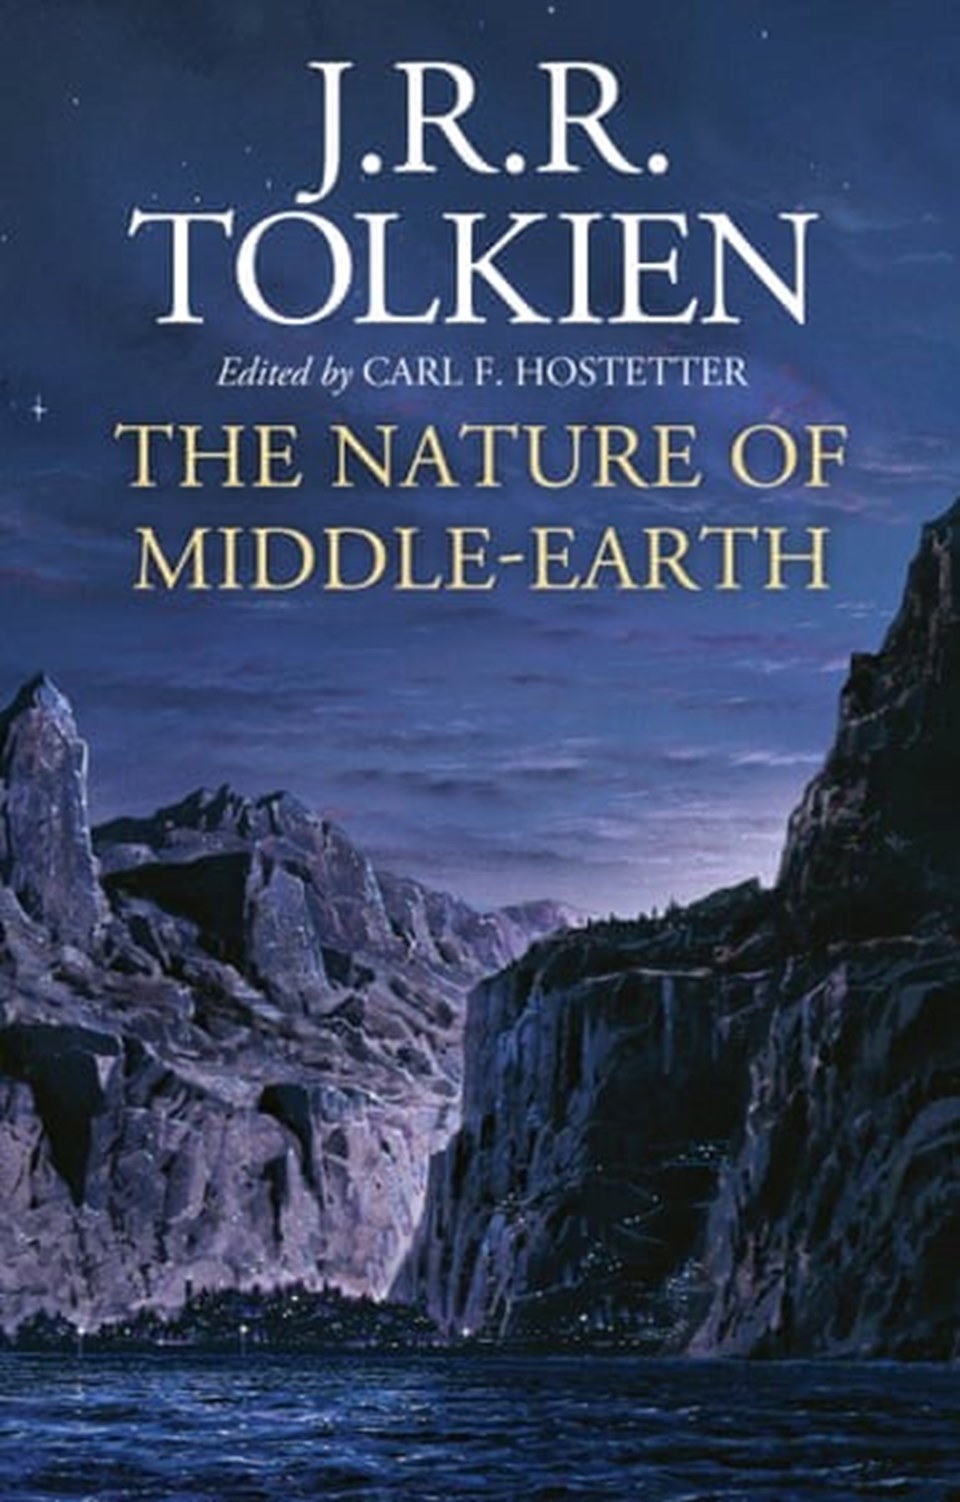 Tolkien'in kitaplaştırılmış makaleleri Haziran 2021'de yayınlanacak - 1